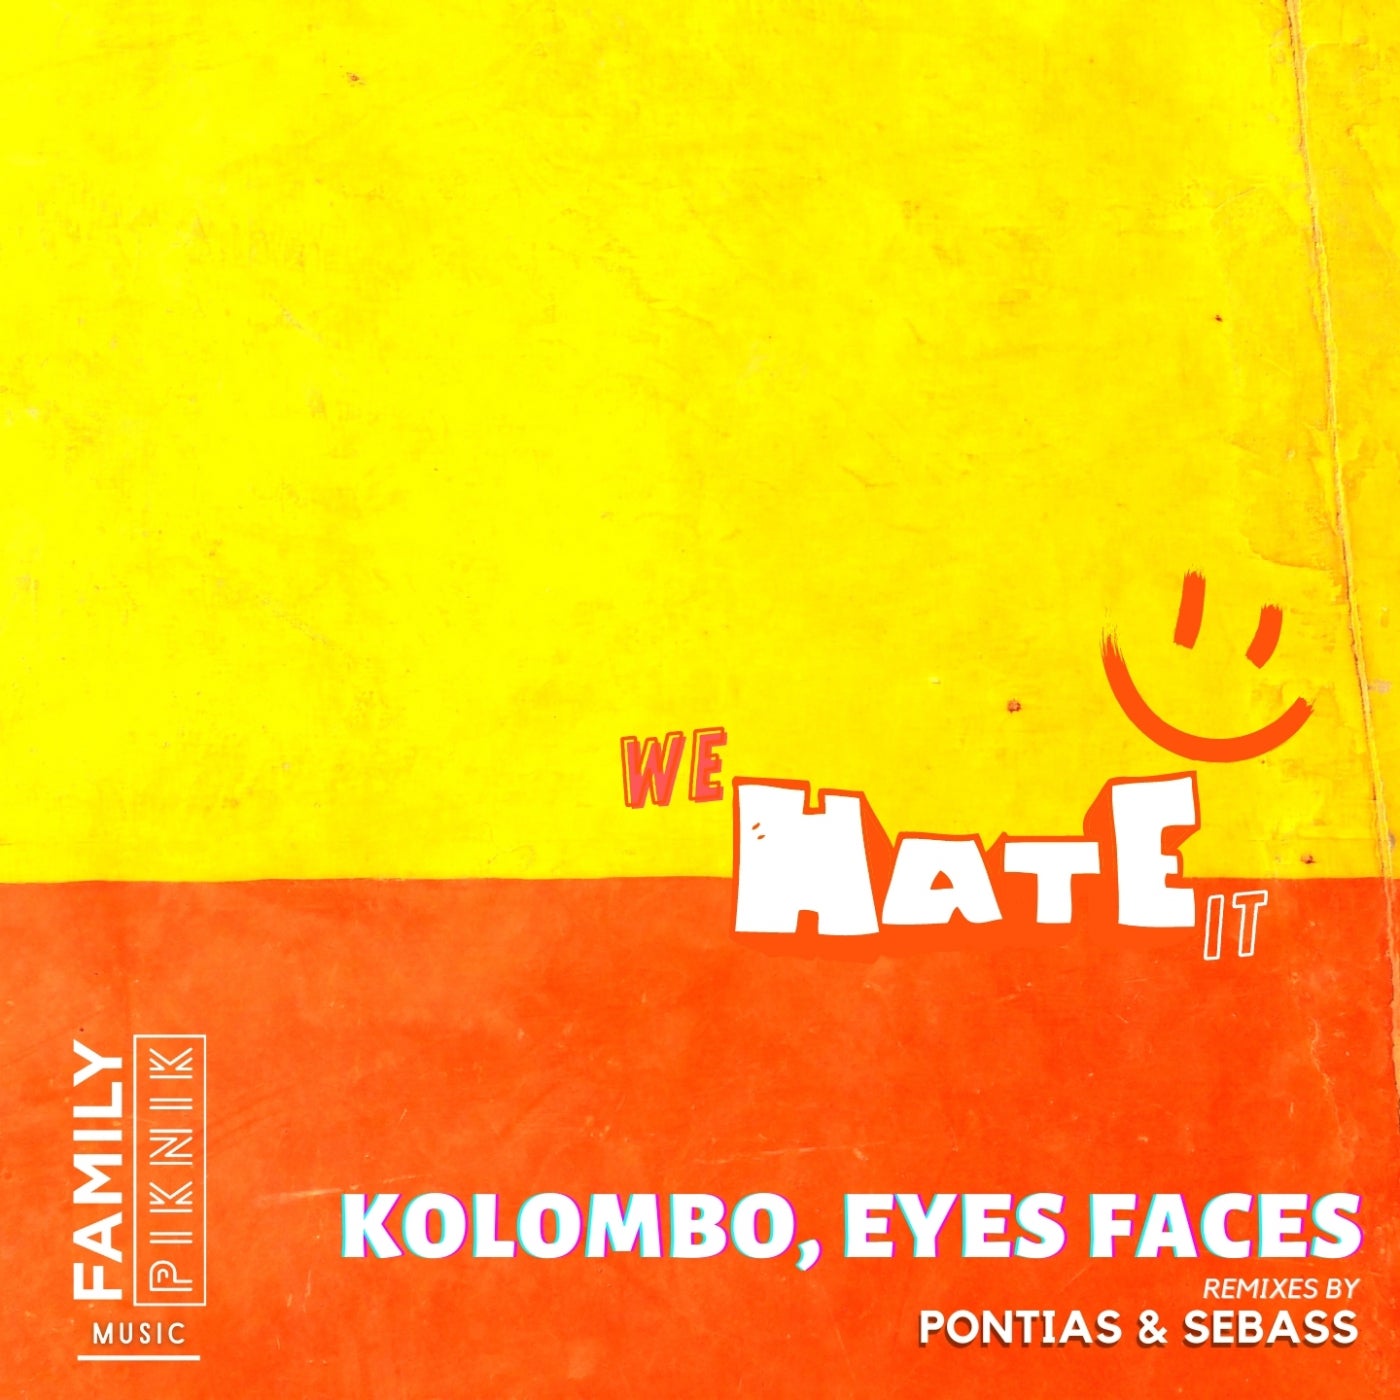 Kolombo, Eyes Faces – We Hate it [FPM38]